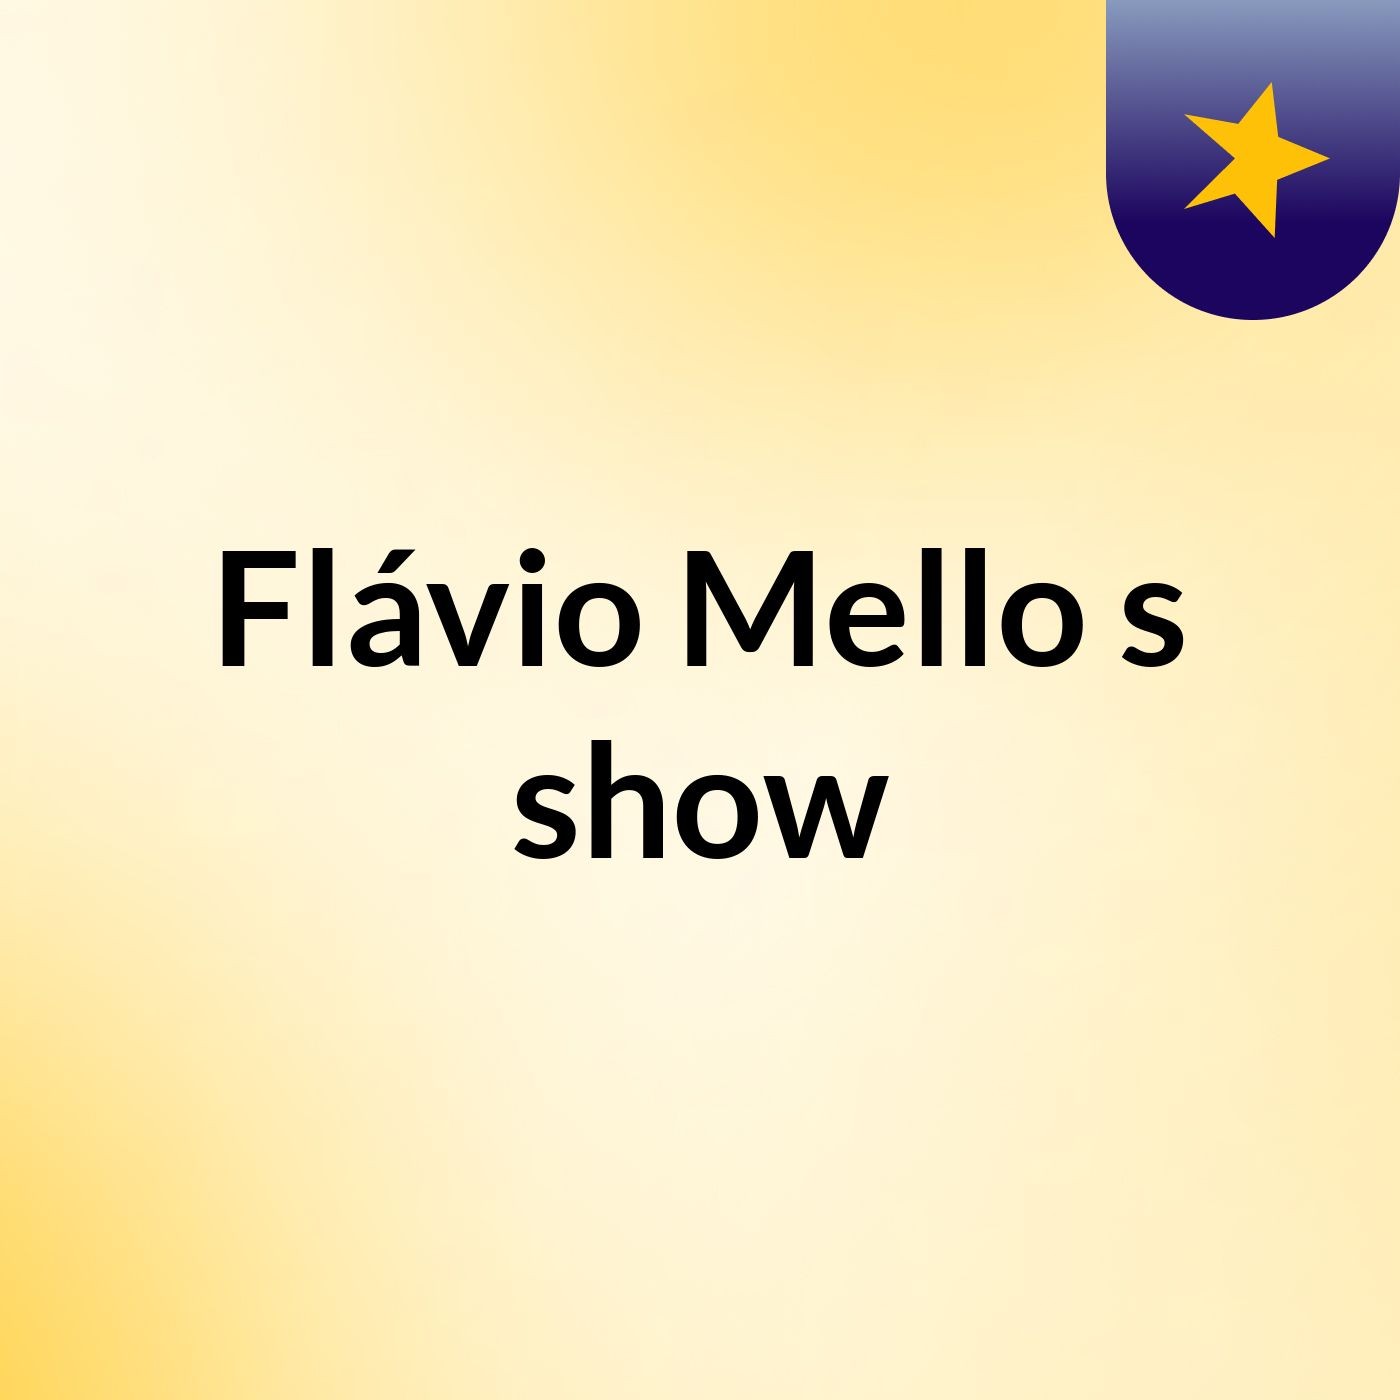 Flávio Mello's show